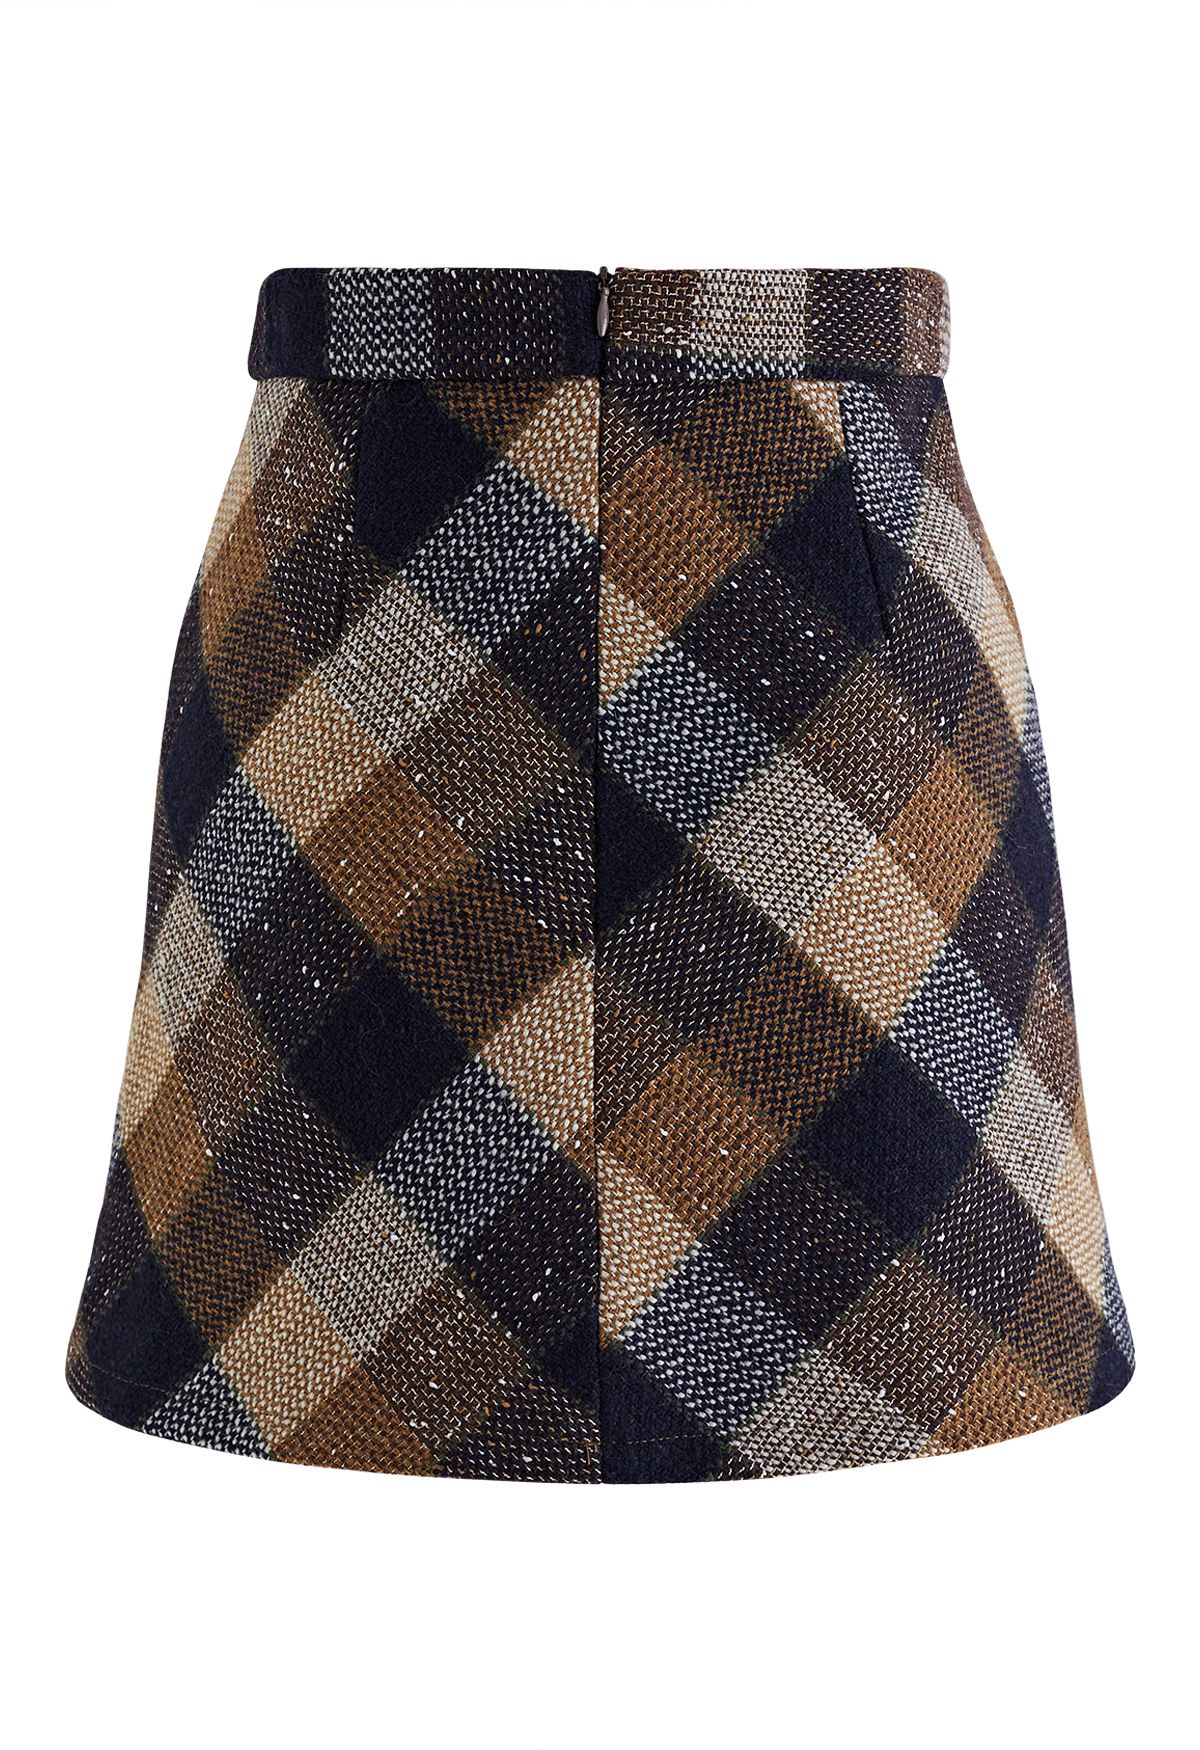 Minifalda de tweed a cuadros retro en tostado